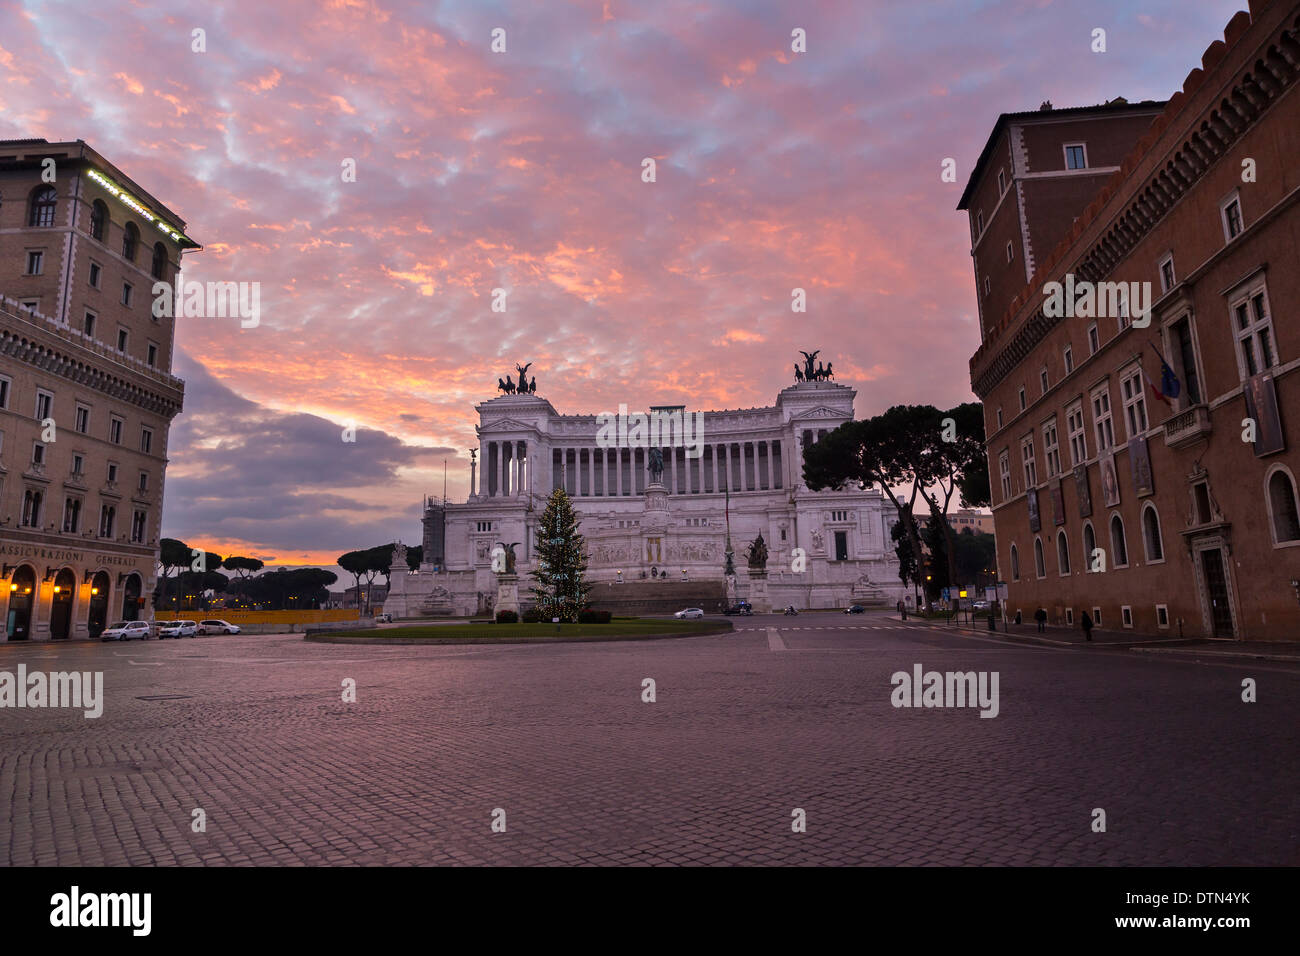 Monument Vittoriano. La Piazza Venezia. Rome, Italie Banque D'Images